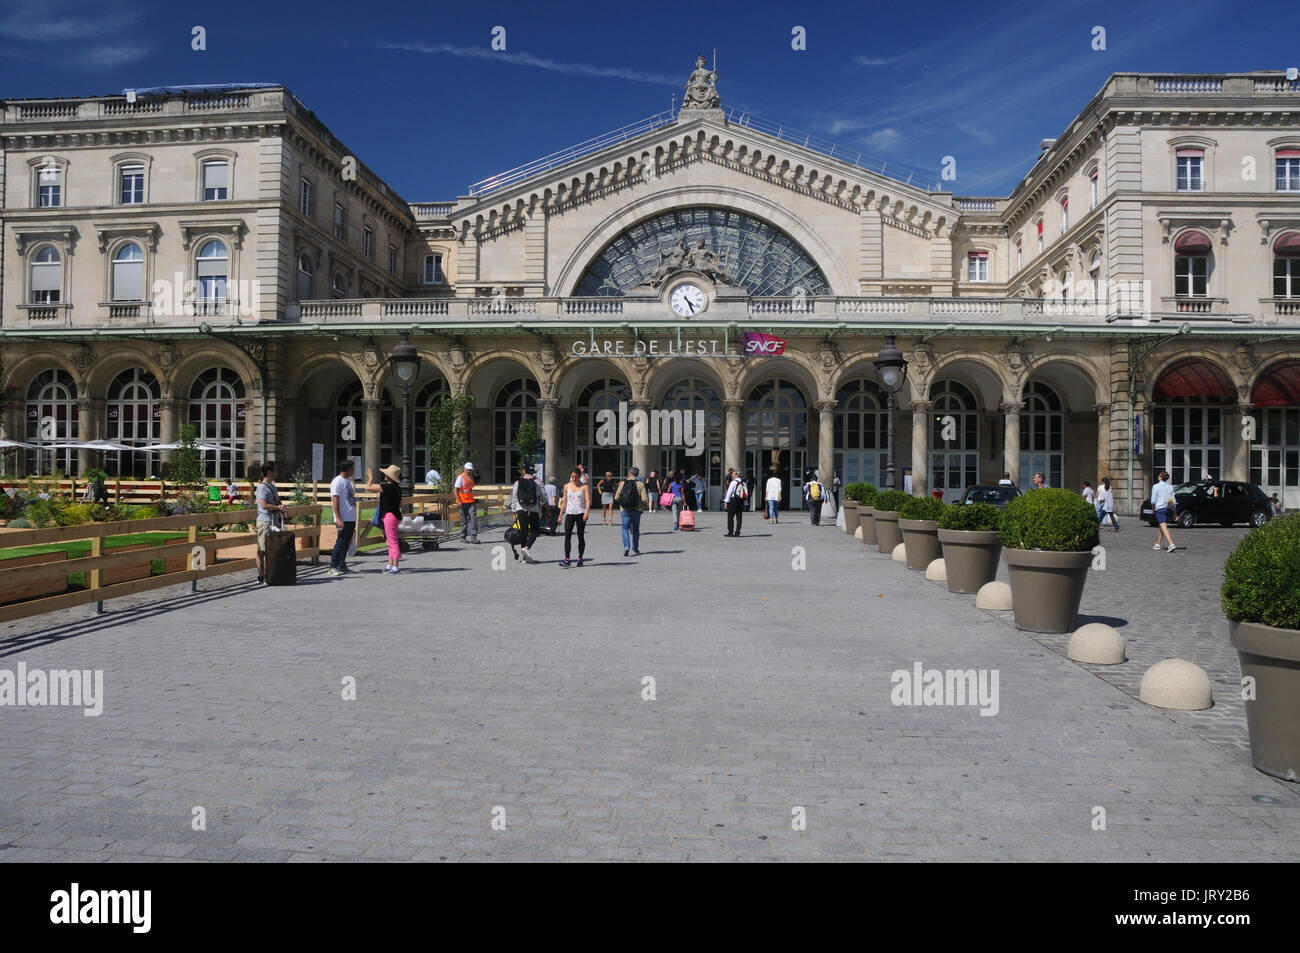 Gare de l'Est in Paris, France Stock Photo